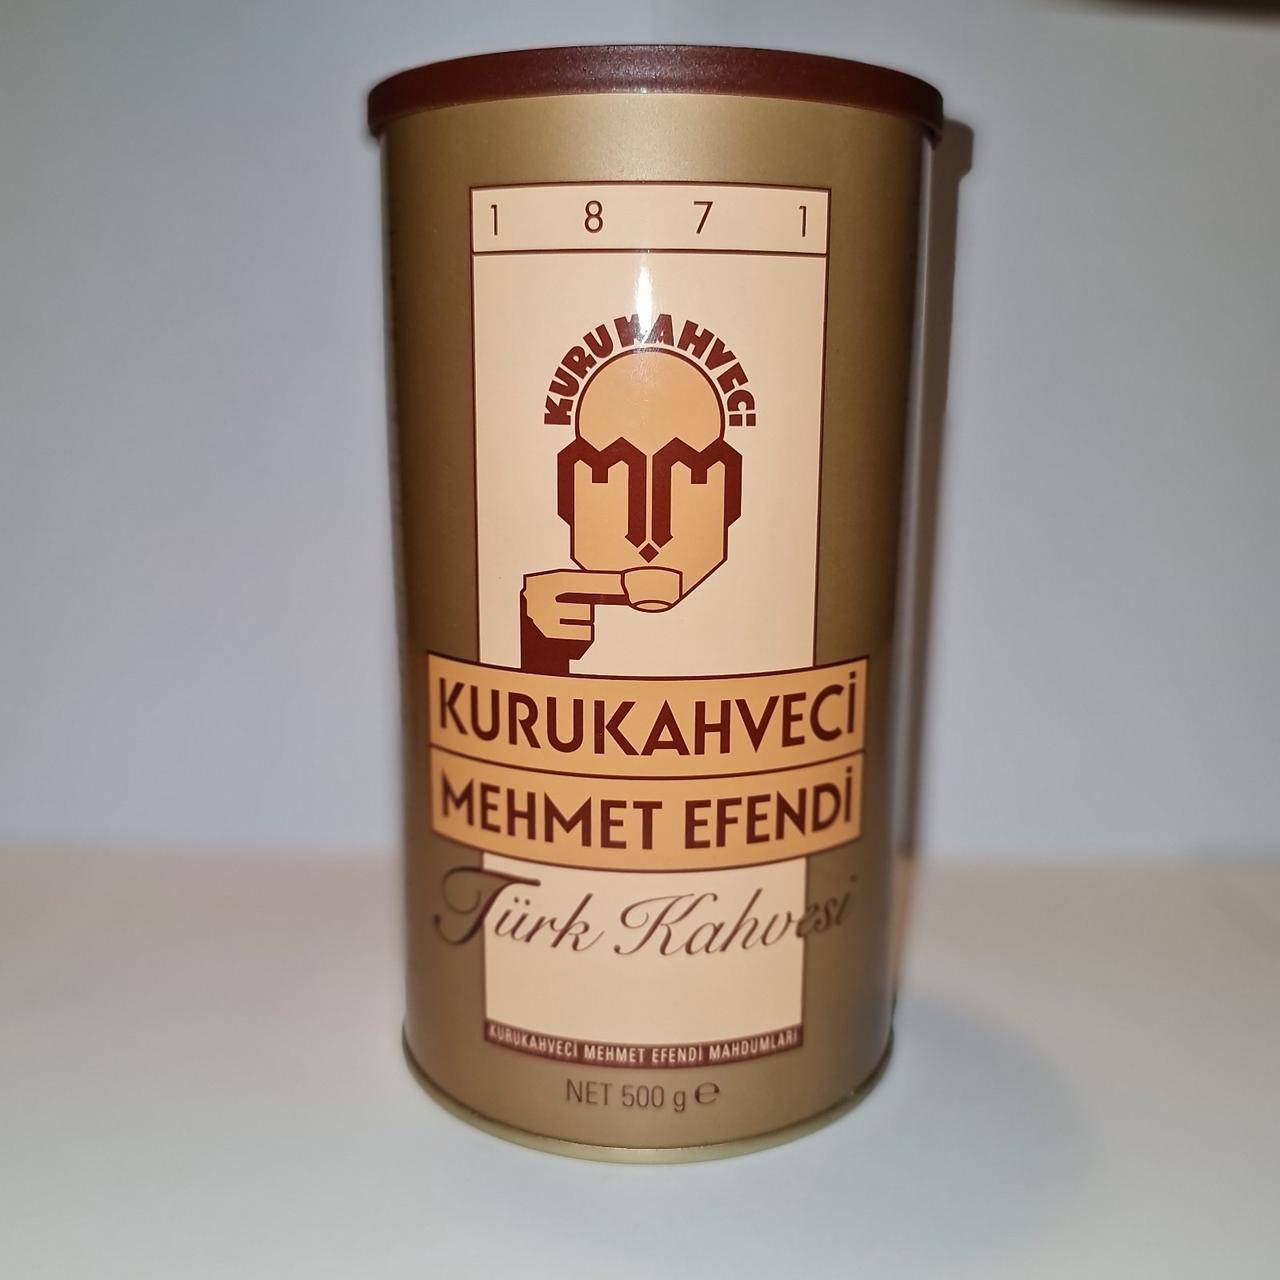 Kurukahveci mehmet efendi: как готовить и варить кофе